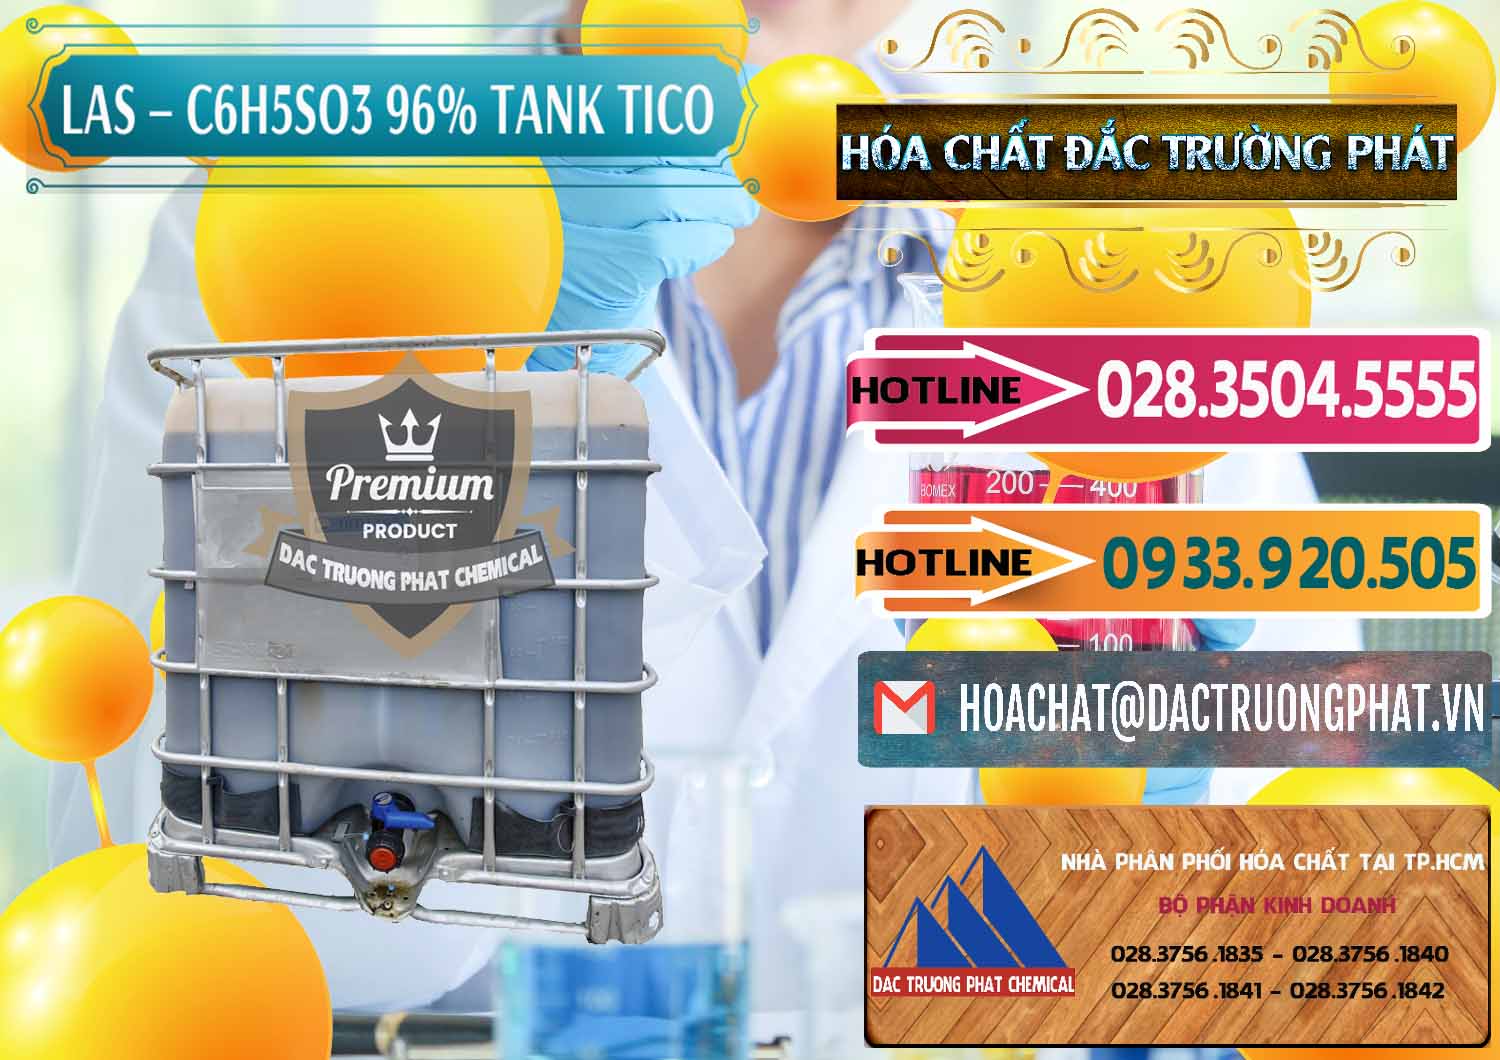 Cty chuyên cung ứng - bán Chất tạo bọt Las P Tico Tank IBC Bồn Việt Nam - 0488 - Nhà phân phối & cung cấp hóa chất tại TP.HCM - dactruongphat.vn